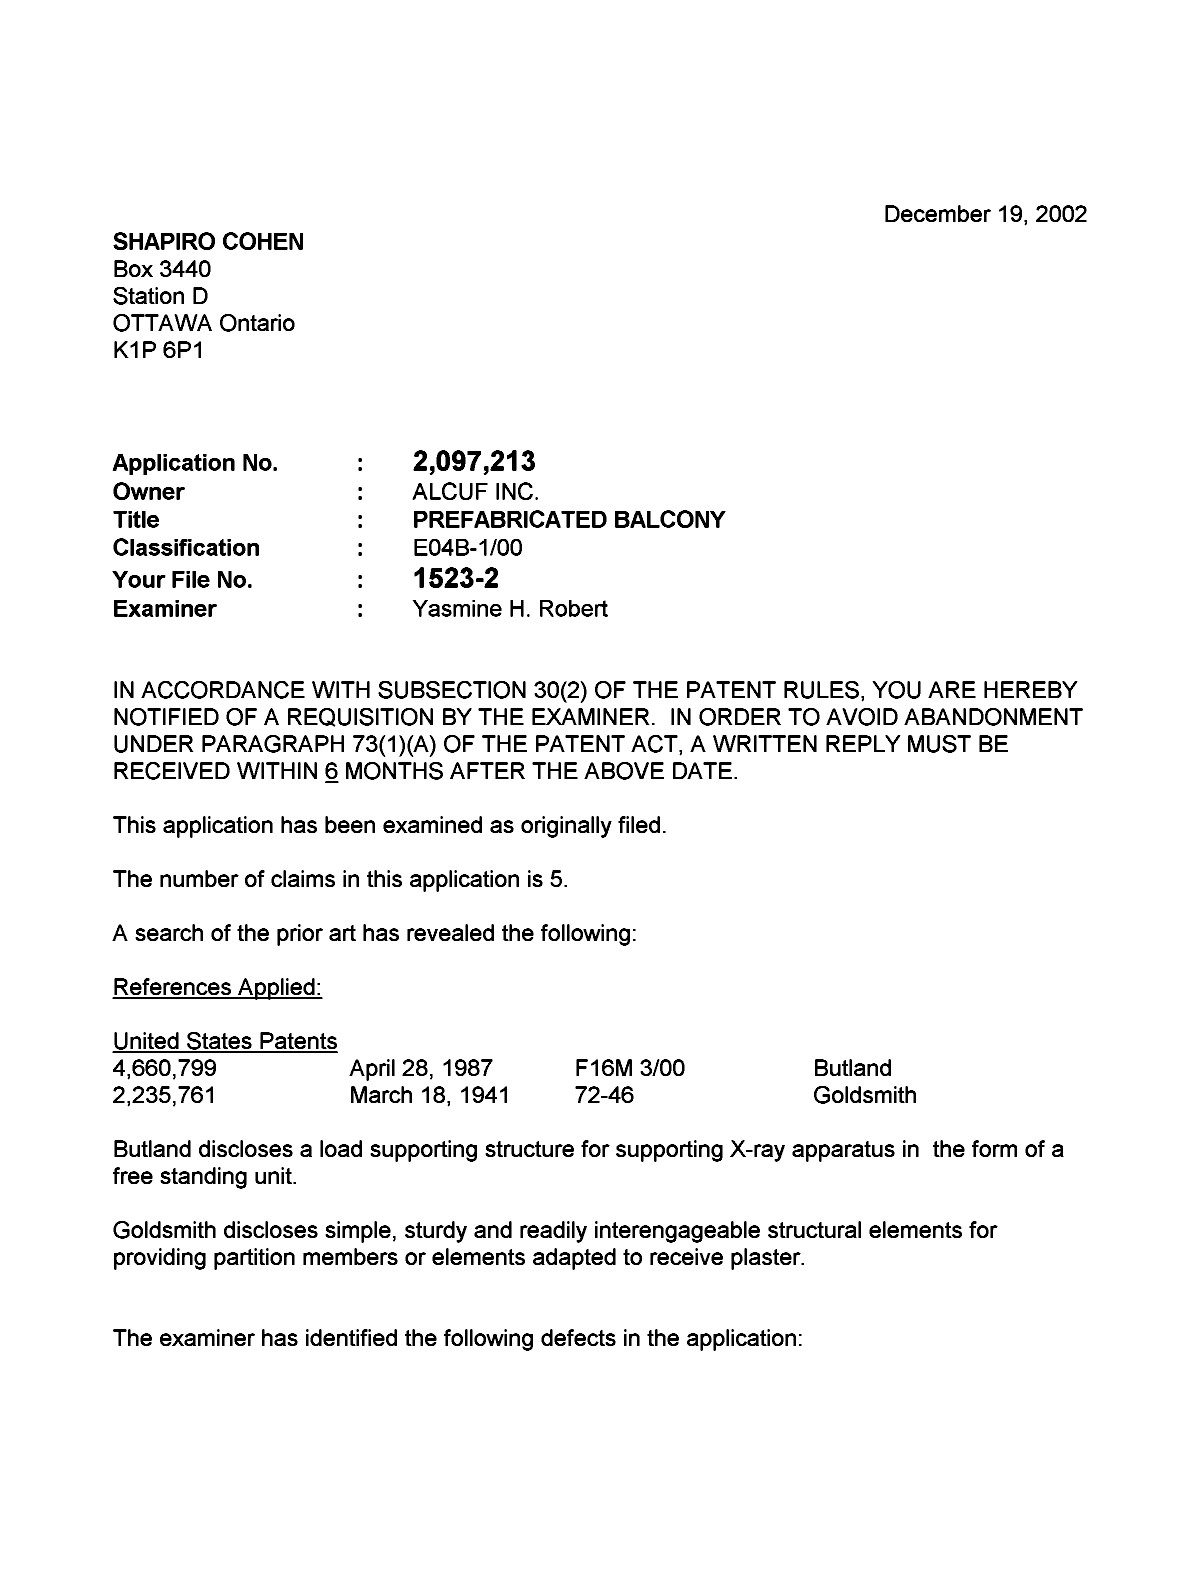 Document de brevet canadien 2097213. Poursuite-Amendment 20021219. Image 1 de 2